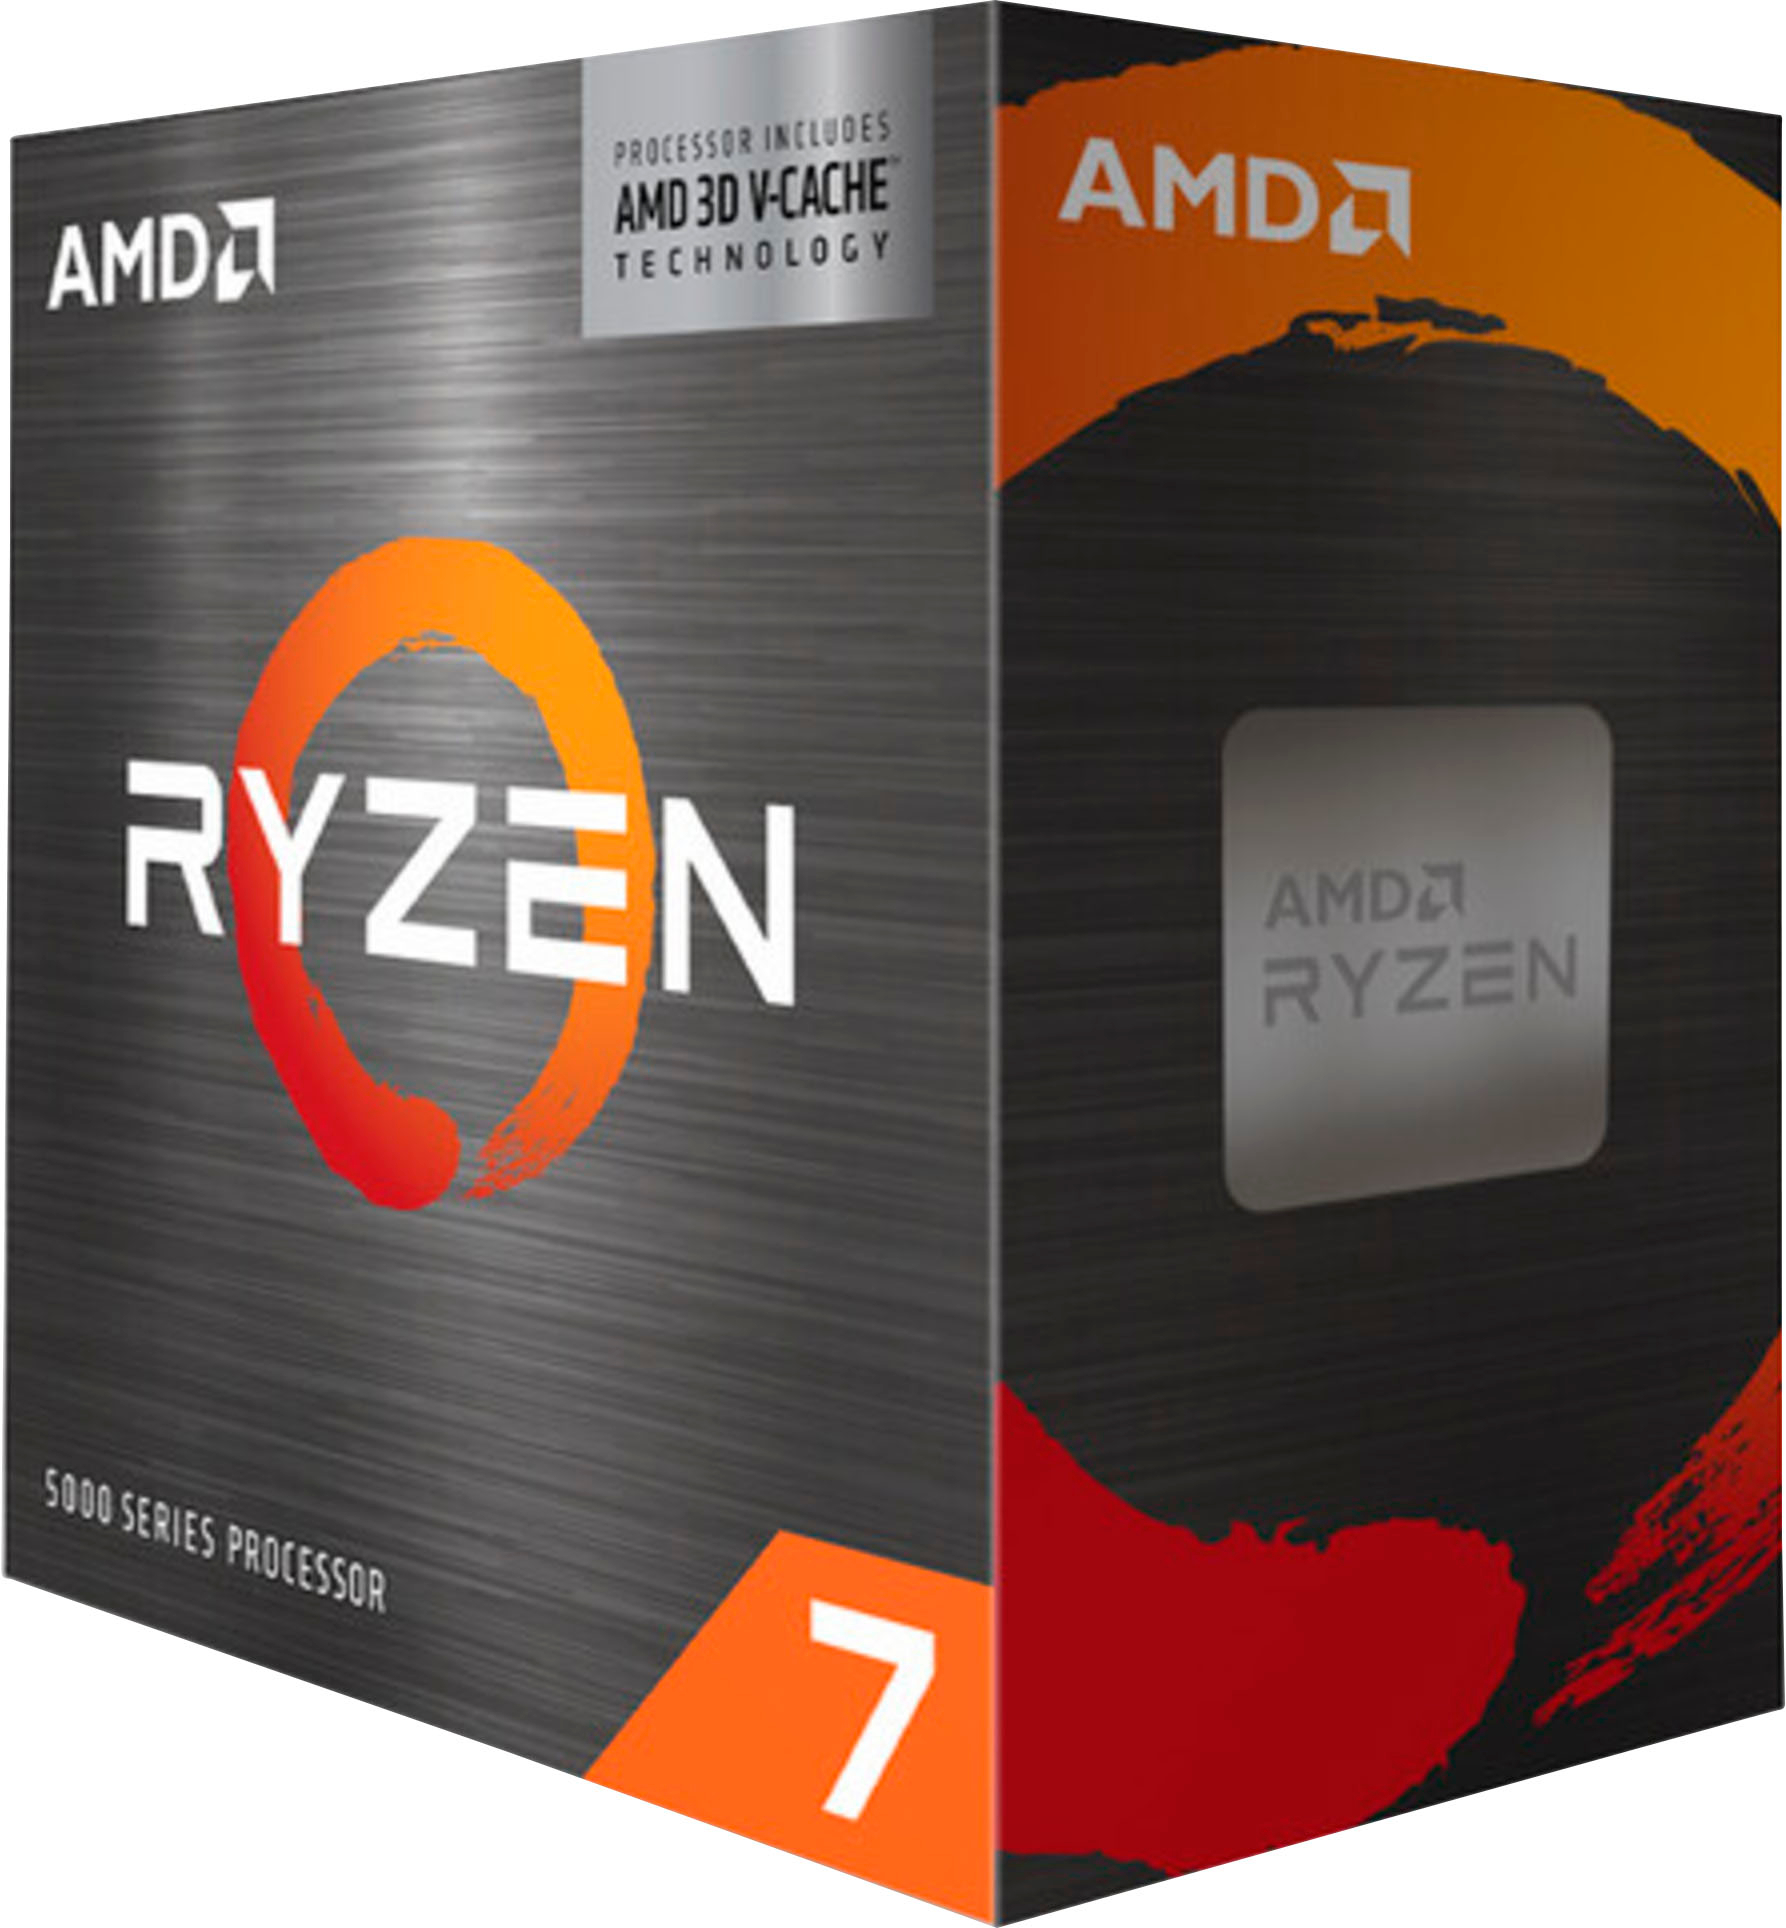 AMD Ryzen 7 Eight-Core Black GHz 5800X3D 100-100000651WOF AM4 - Processor Best 3.4 Buy